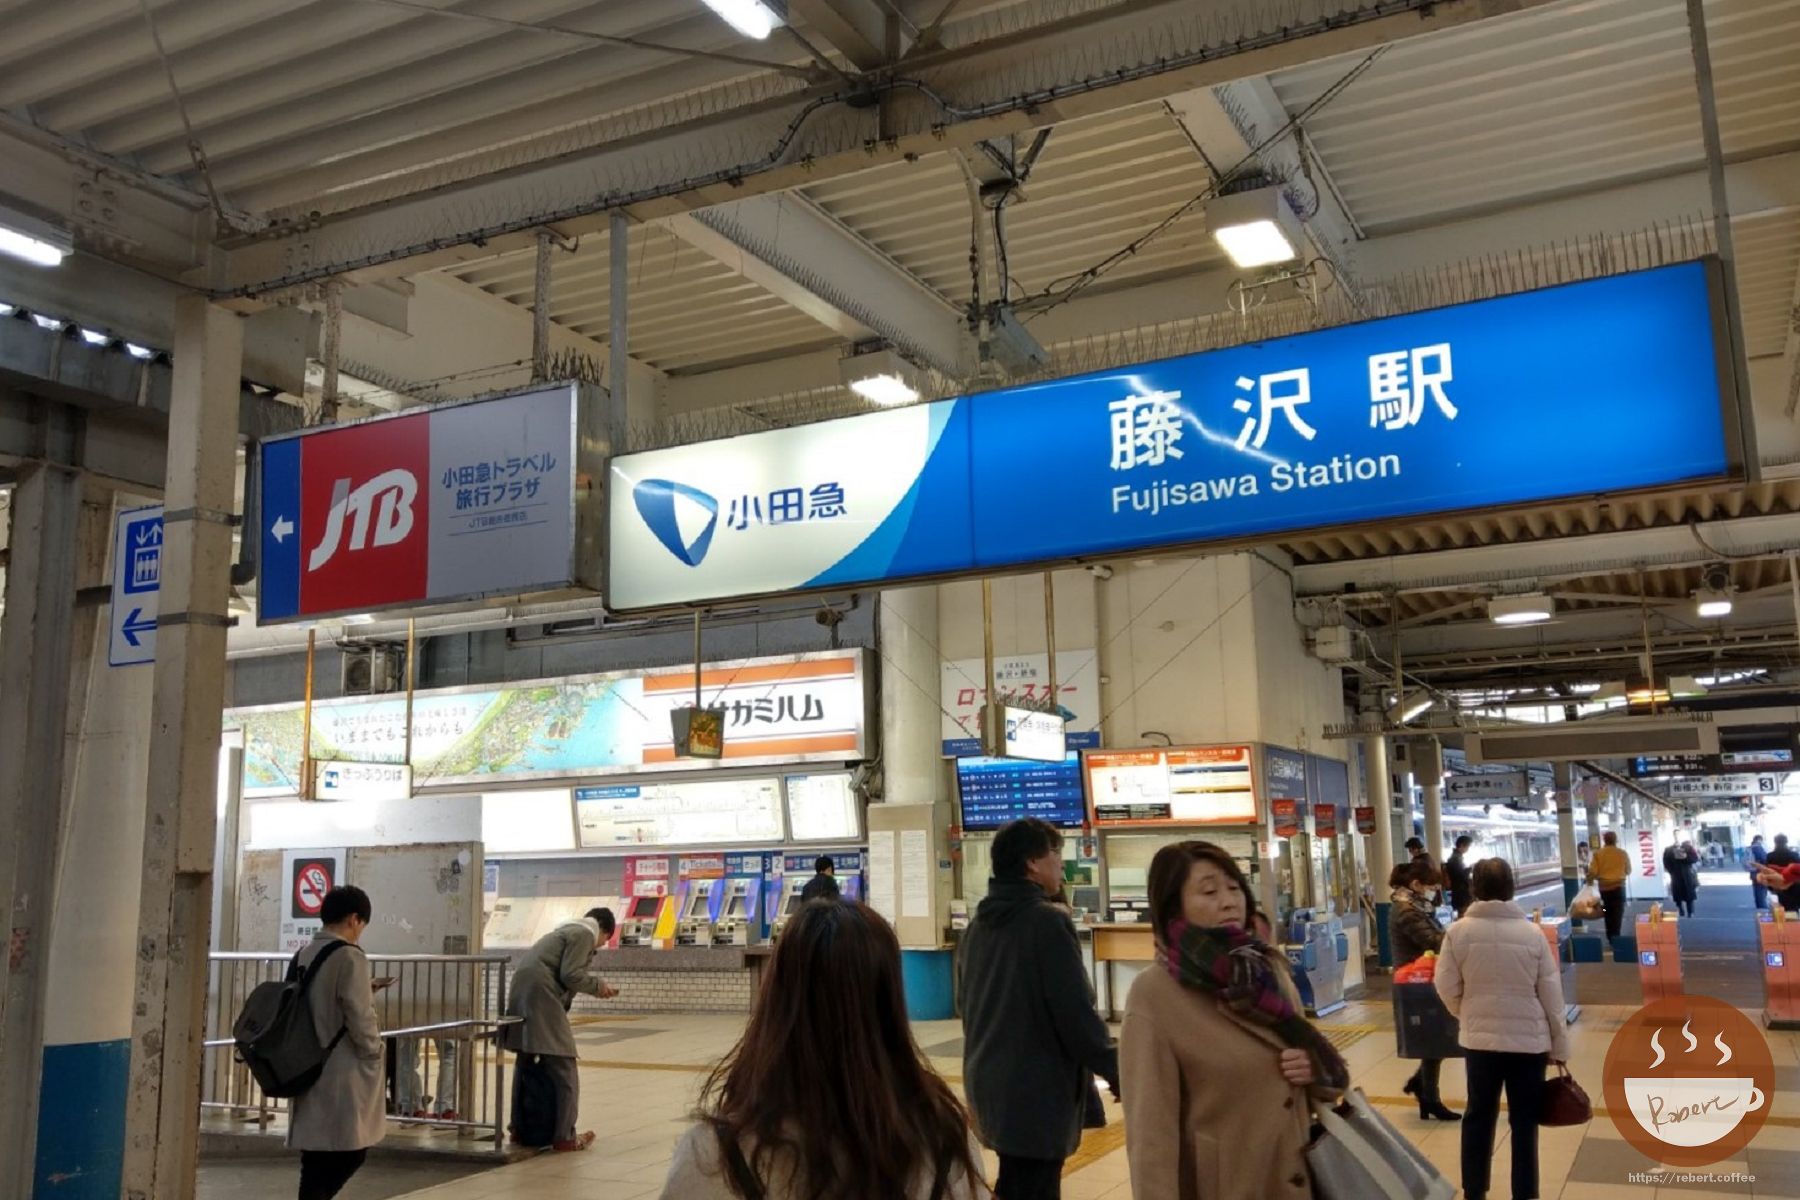 藤澤站和鎌倉站是江之島電鐵的頭尾站，要湘南一日遊就必須從這裡開，並購買江之島電鐵一日券。